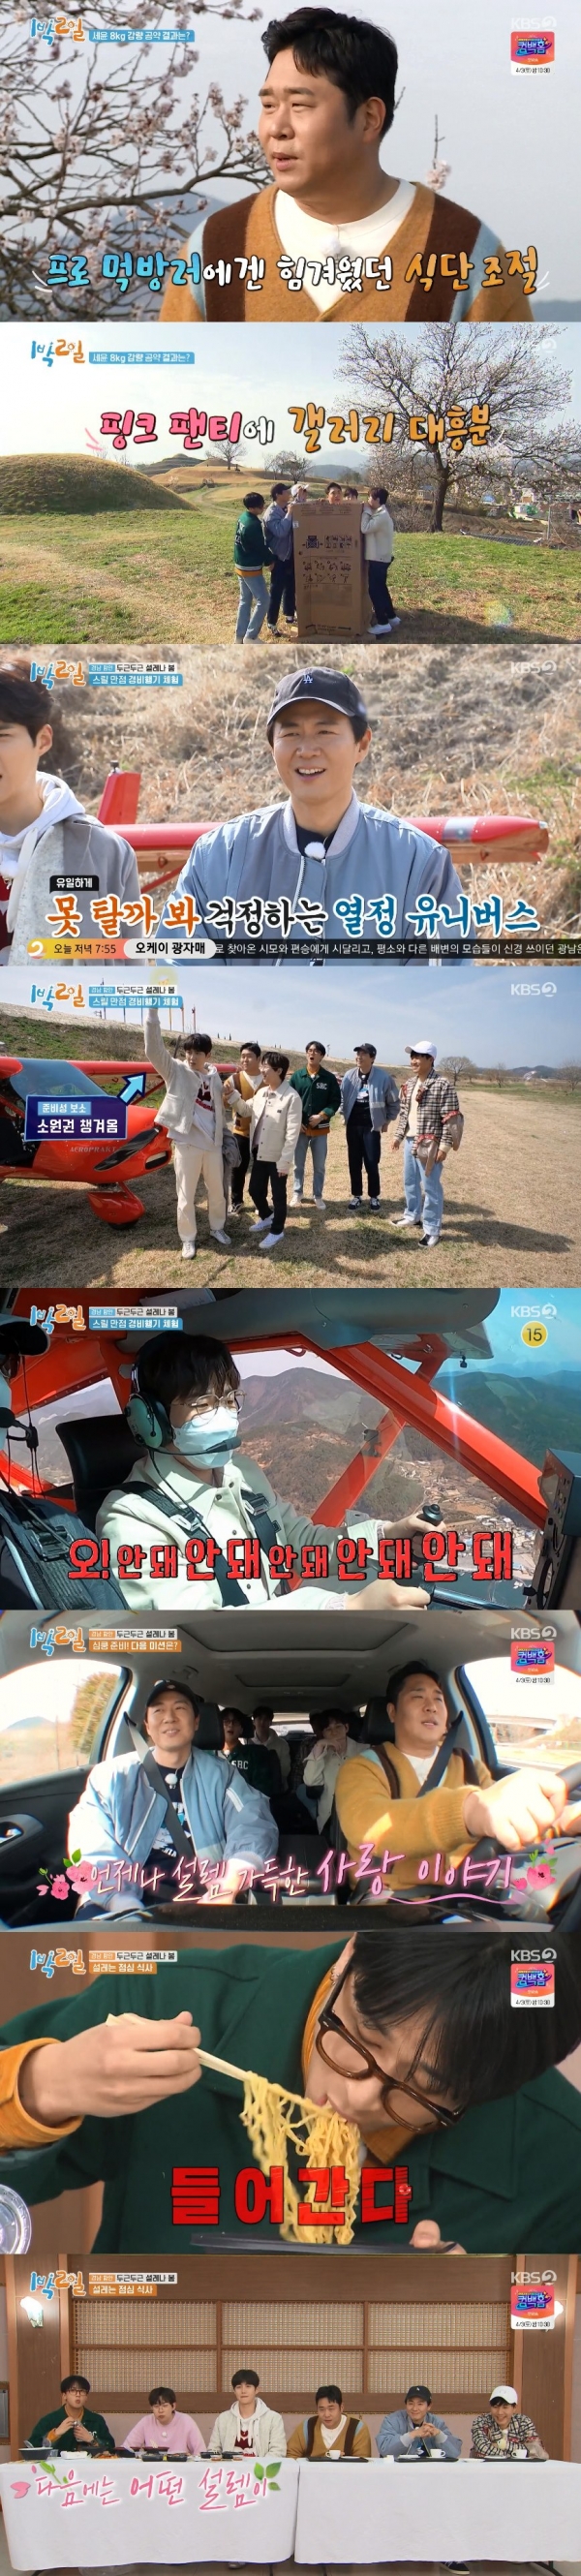 사진 제공: KBS 2TV <1박 2일 시즌4> 영상 캡처